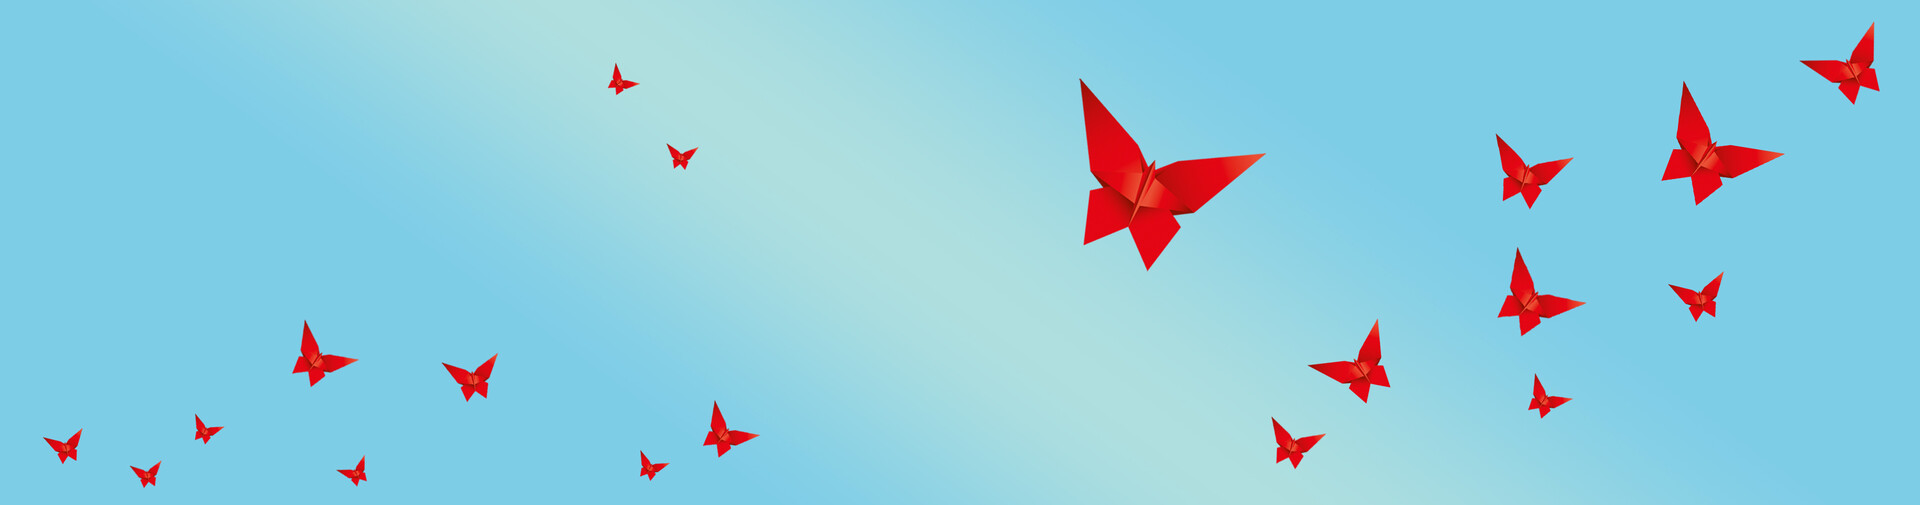 Rote Origami Schmetterlinge vor blauem Hintergrund